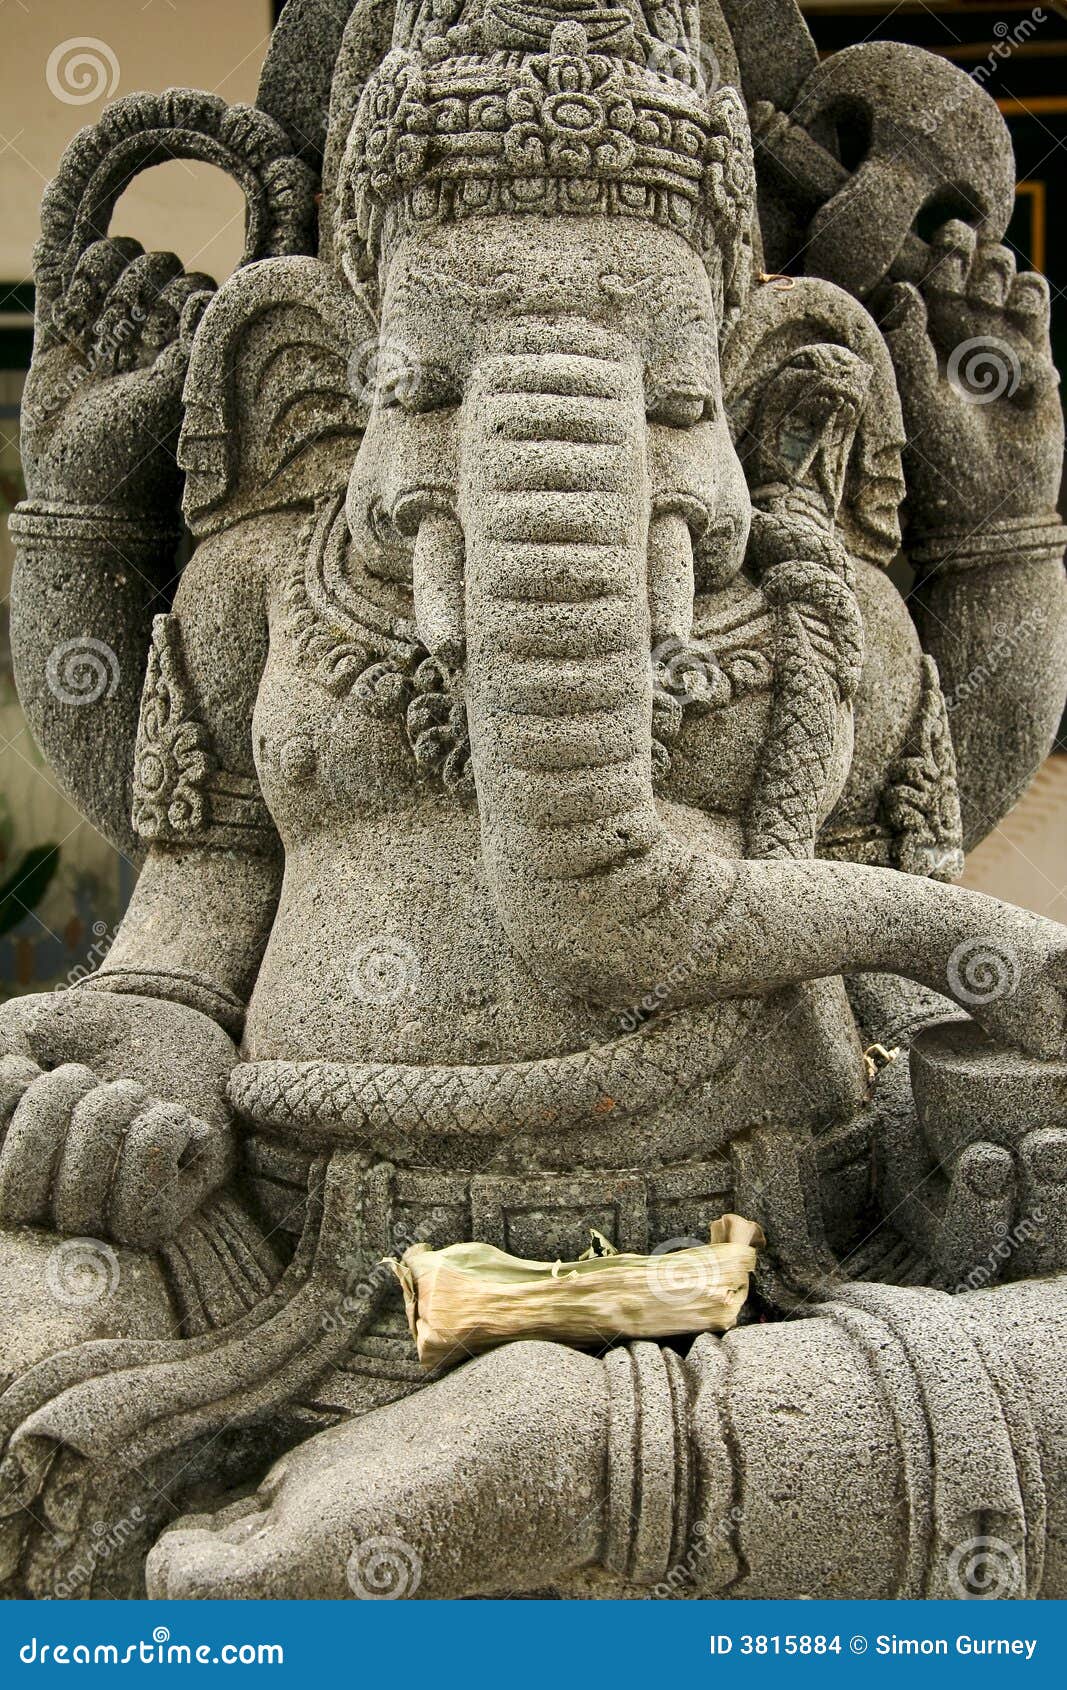 Ganesh Elephant Headed God Statue Stock Images - Image: 3815884